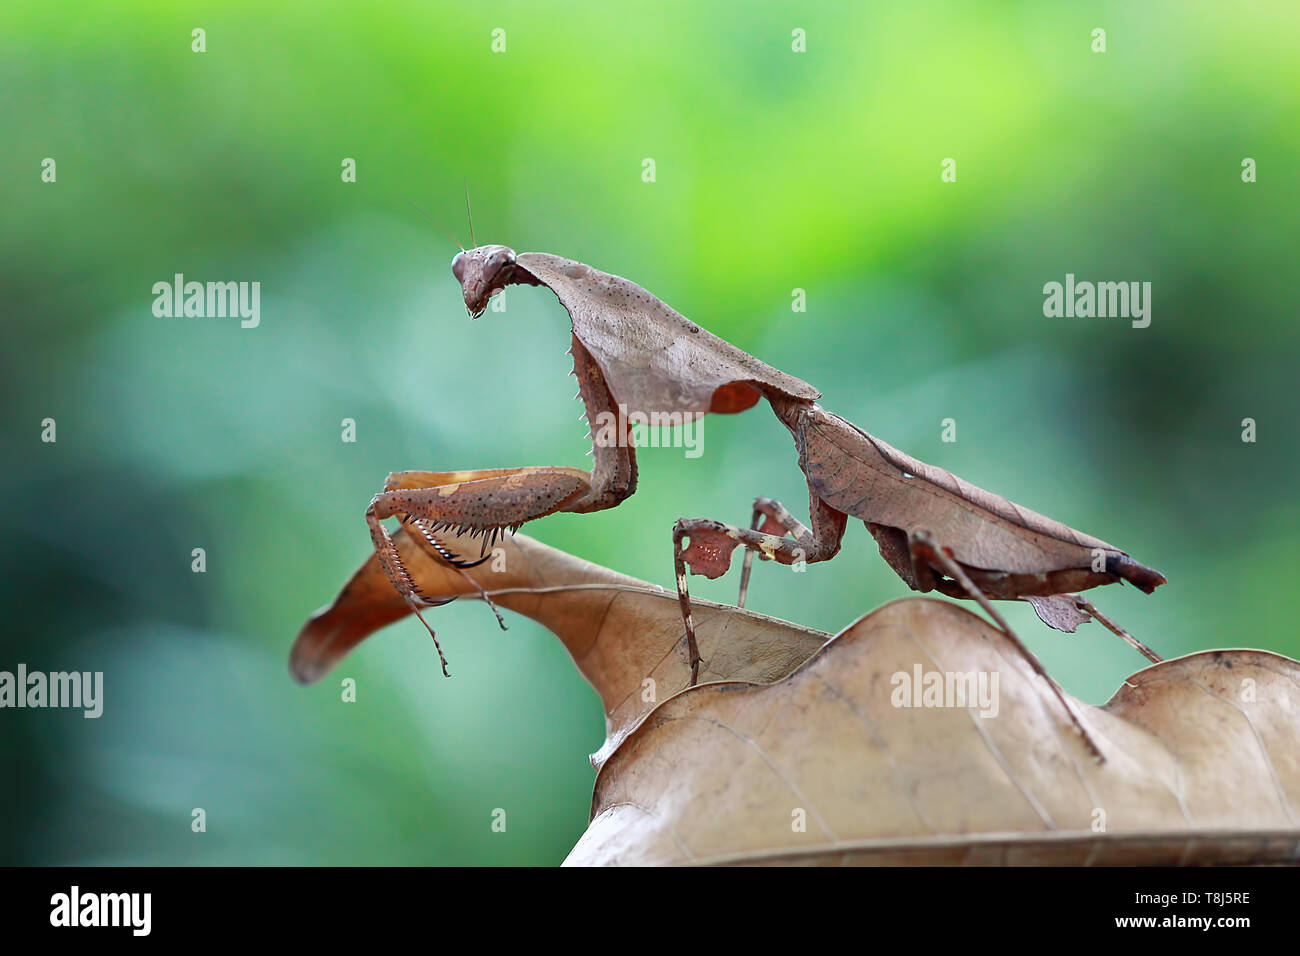 Feuille morte camouflage mantis sur les feuilles séchées, Indonésie Banque D'Images